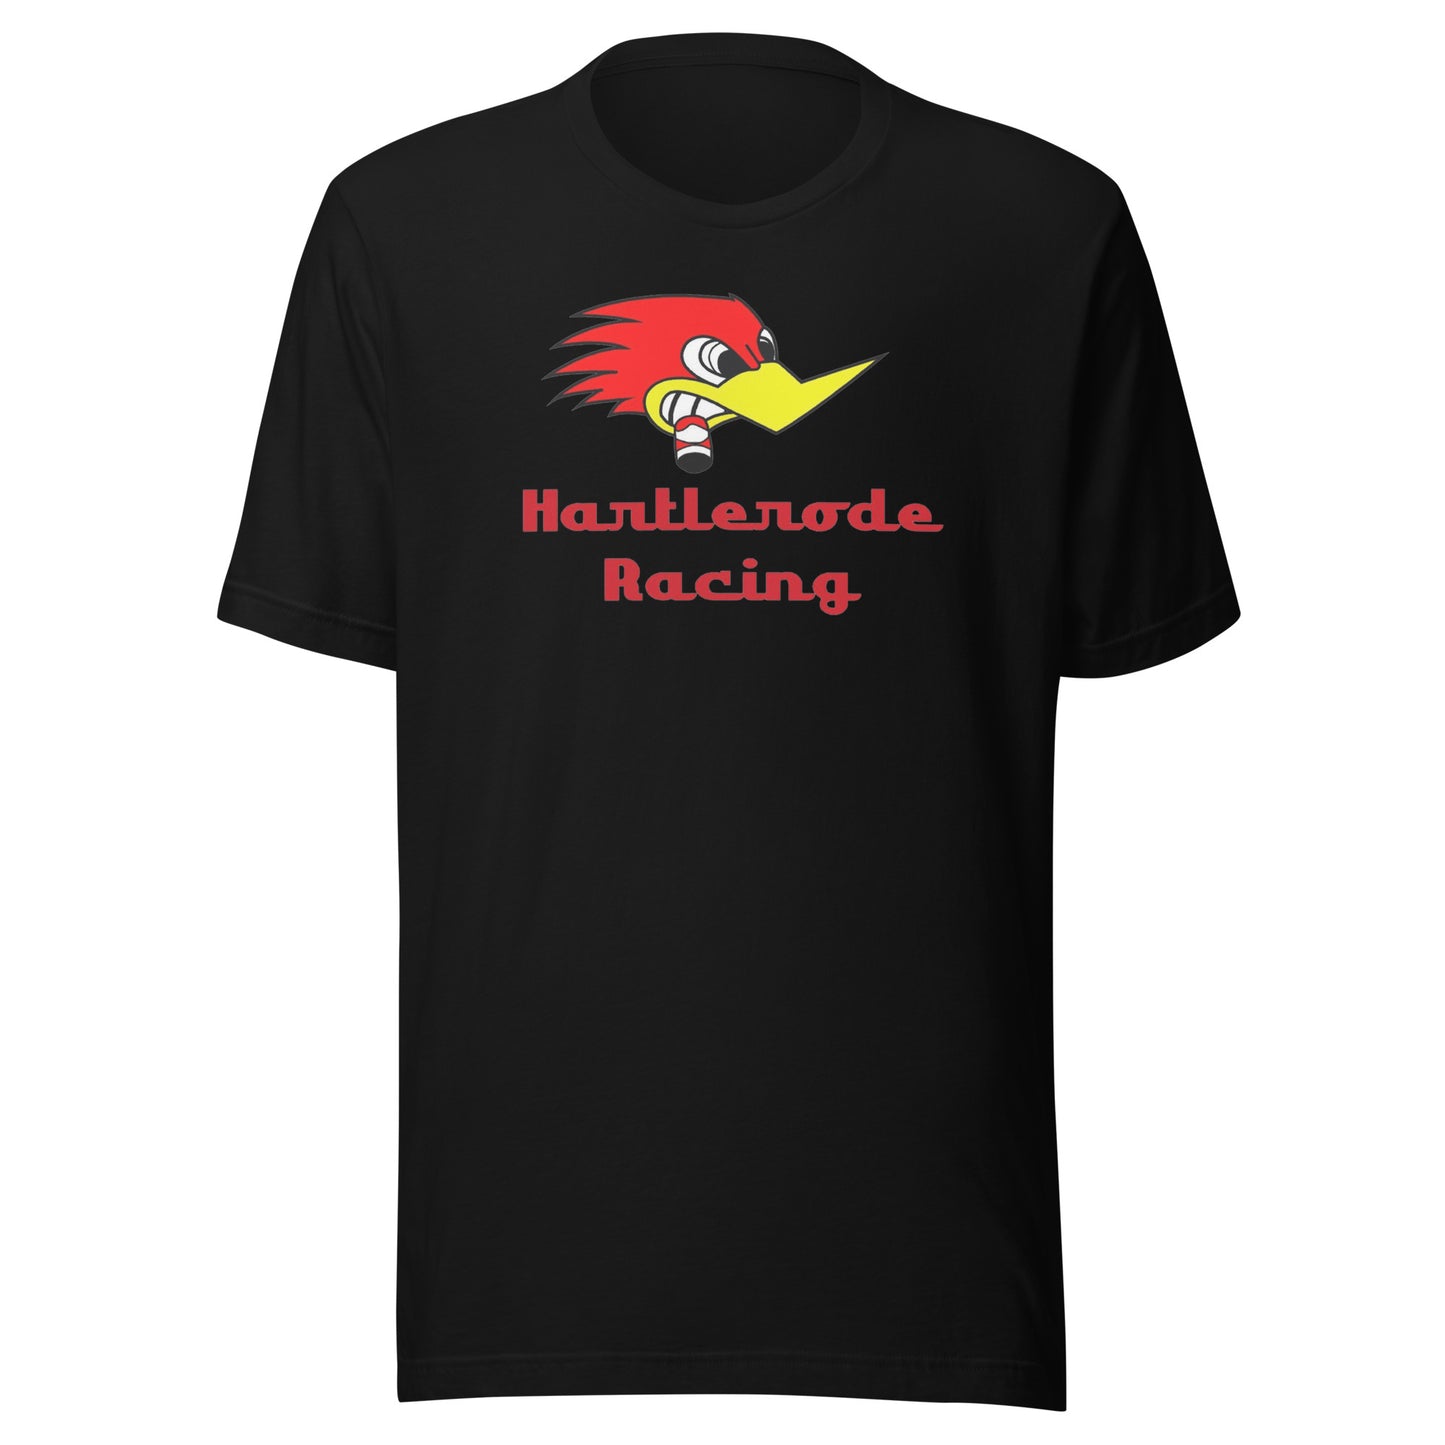 Hartlerode Racing T-Shirt